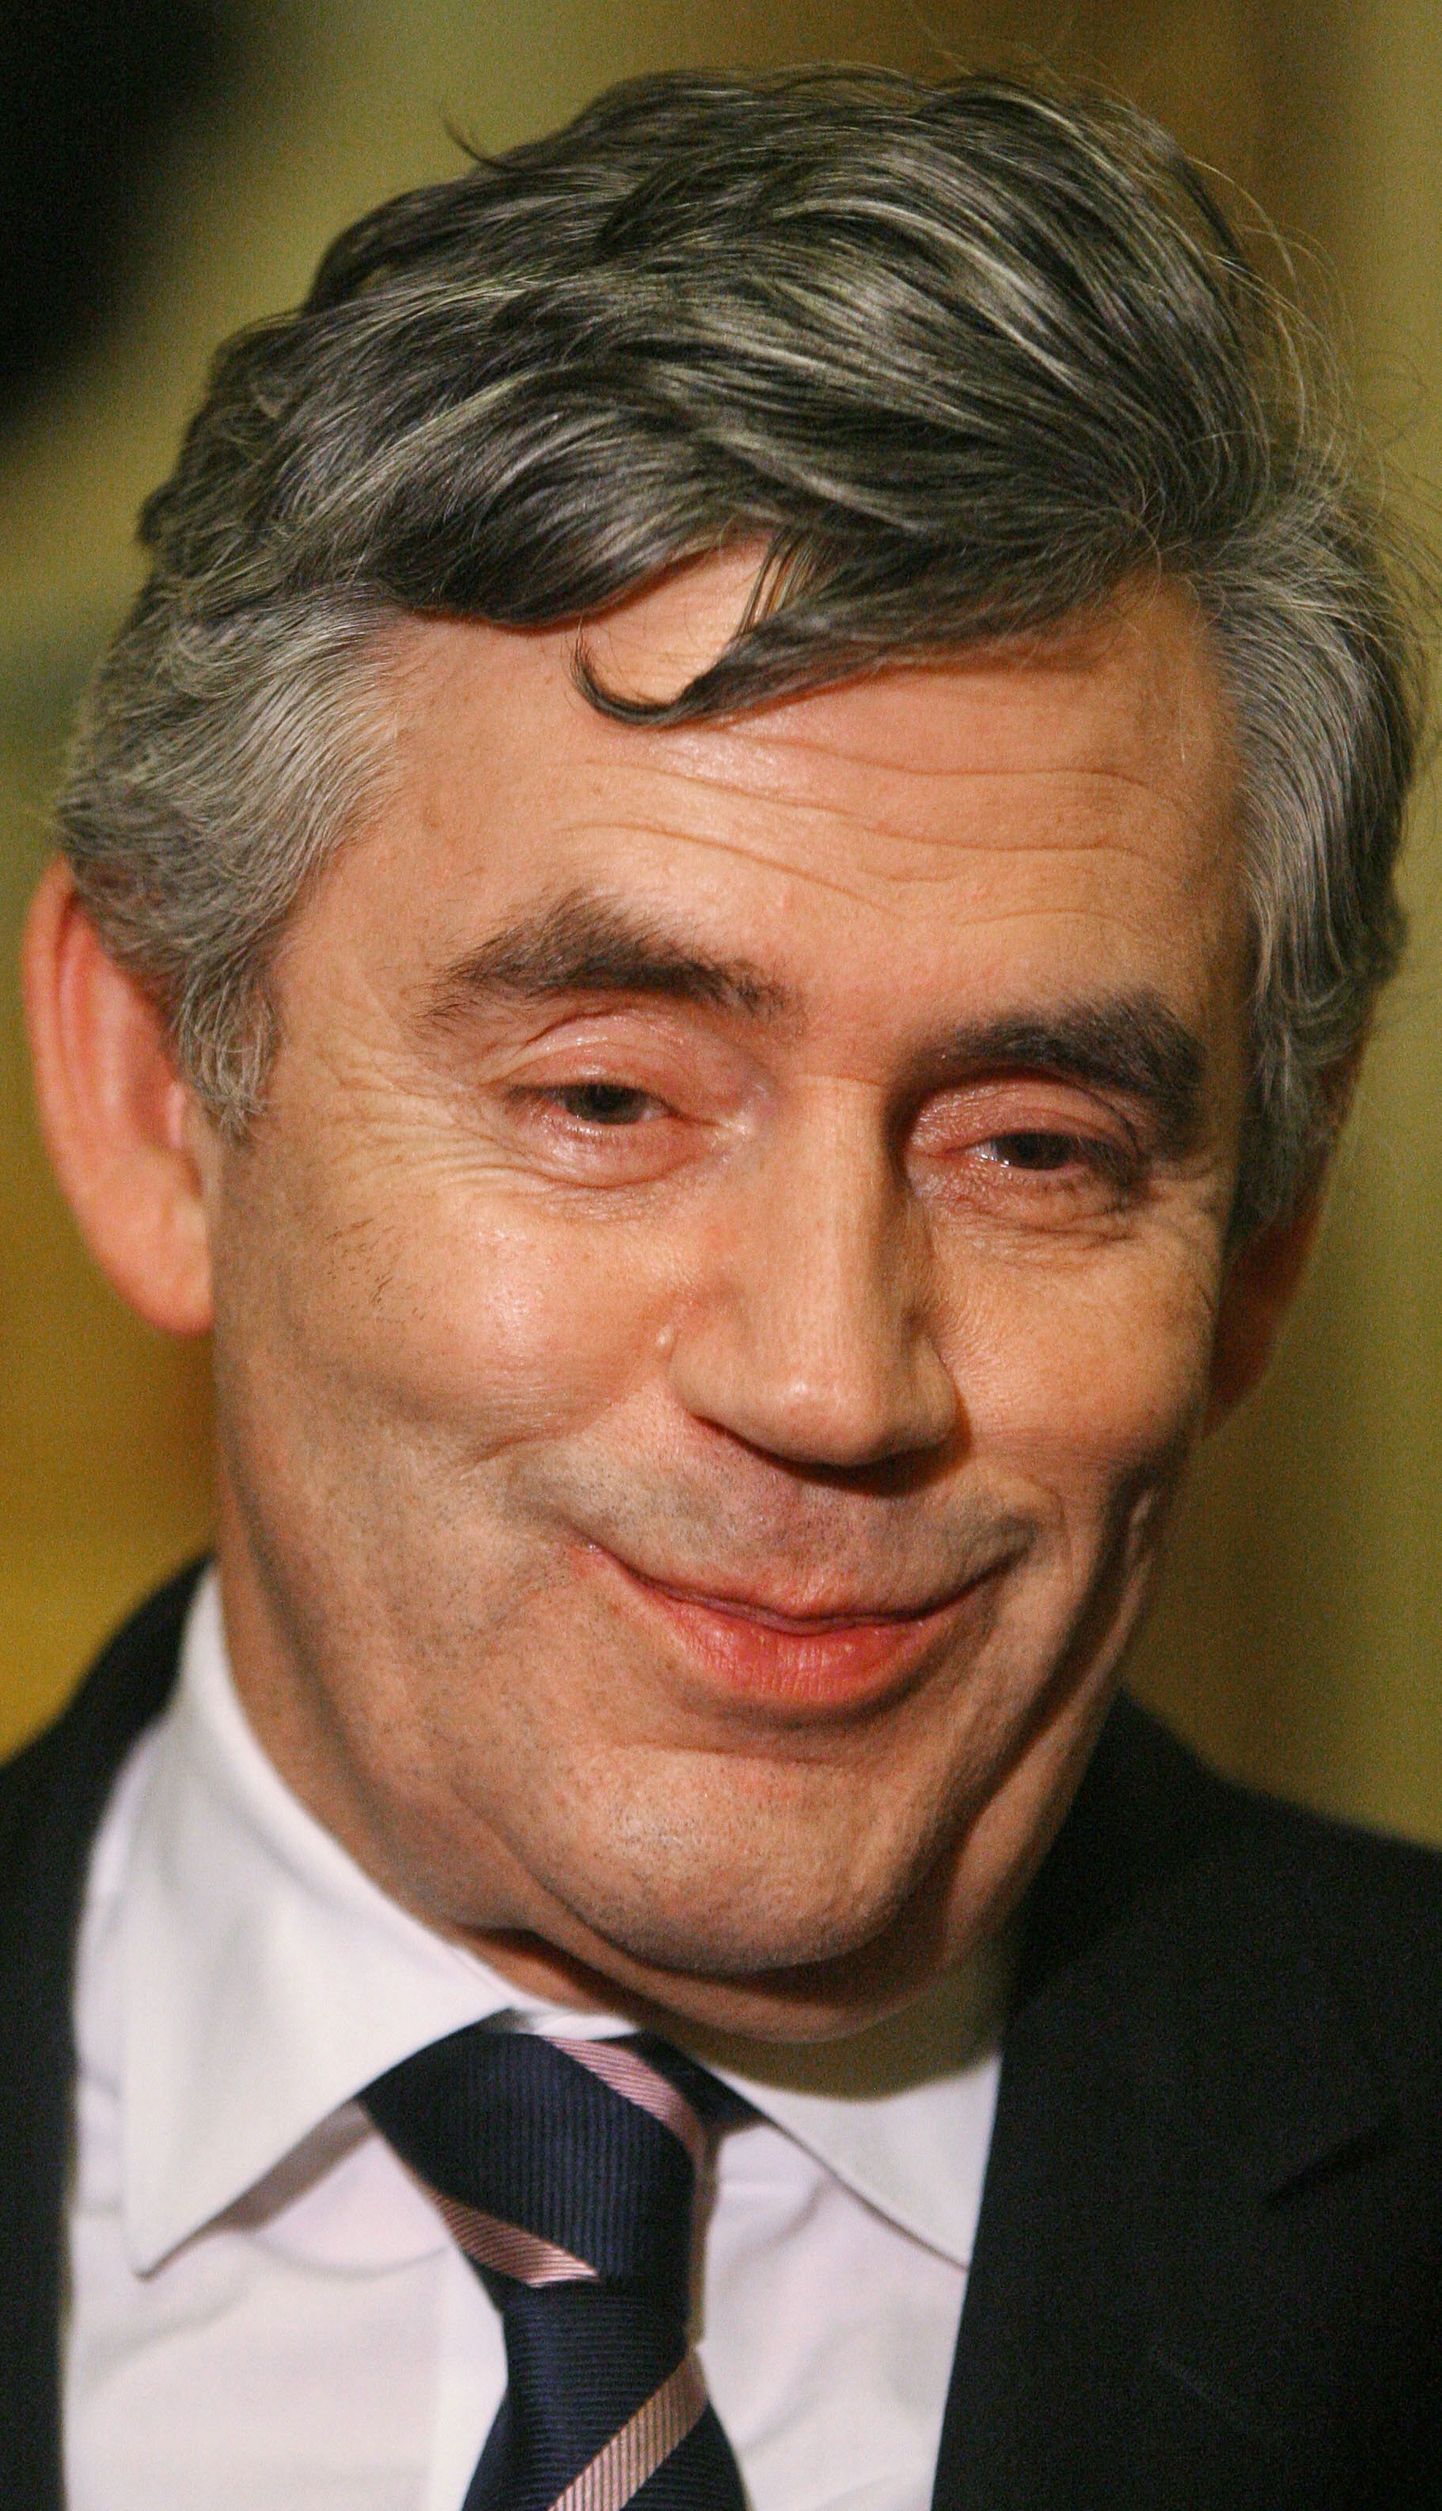 Briti valitsusjuht Gordon Brown.